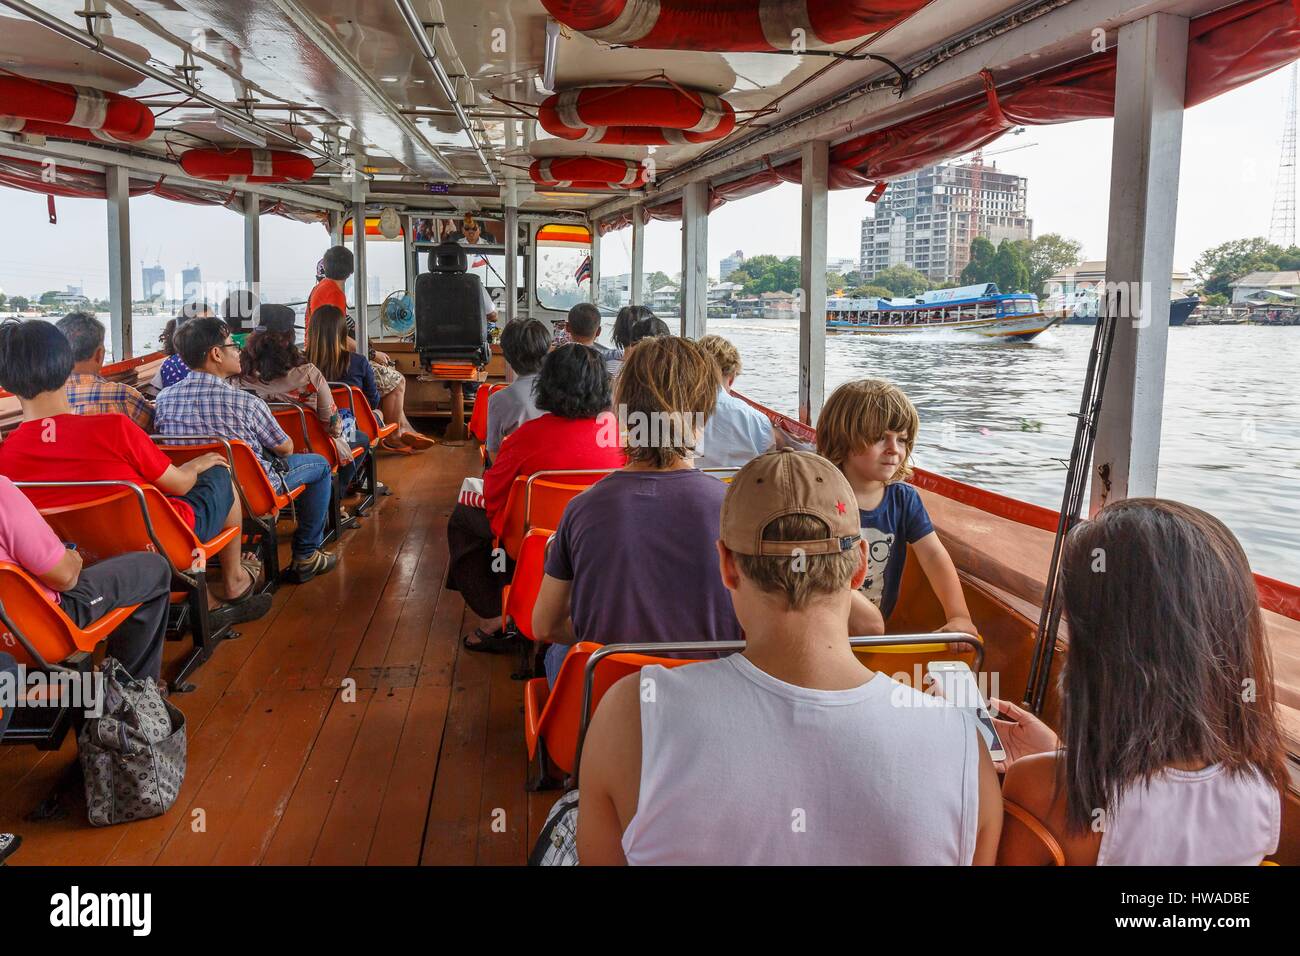 Thailand, Bangkok province, Bangkok, inside a Chao Phraya express boat on the Chao Phraya river Stock Photo